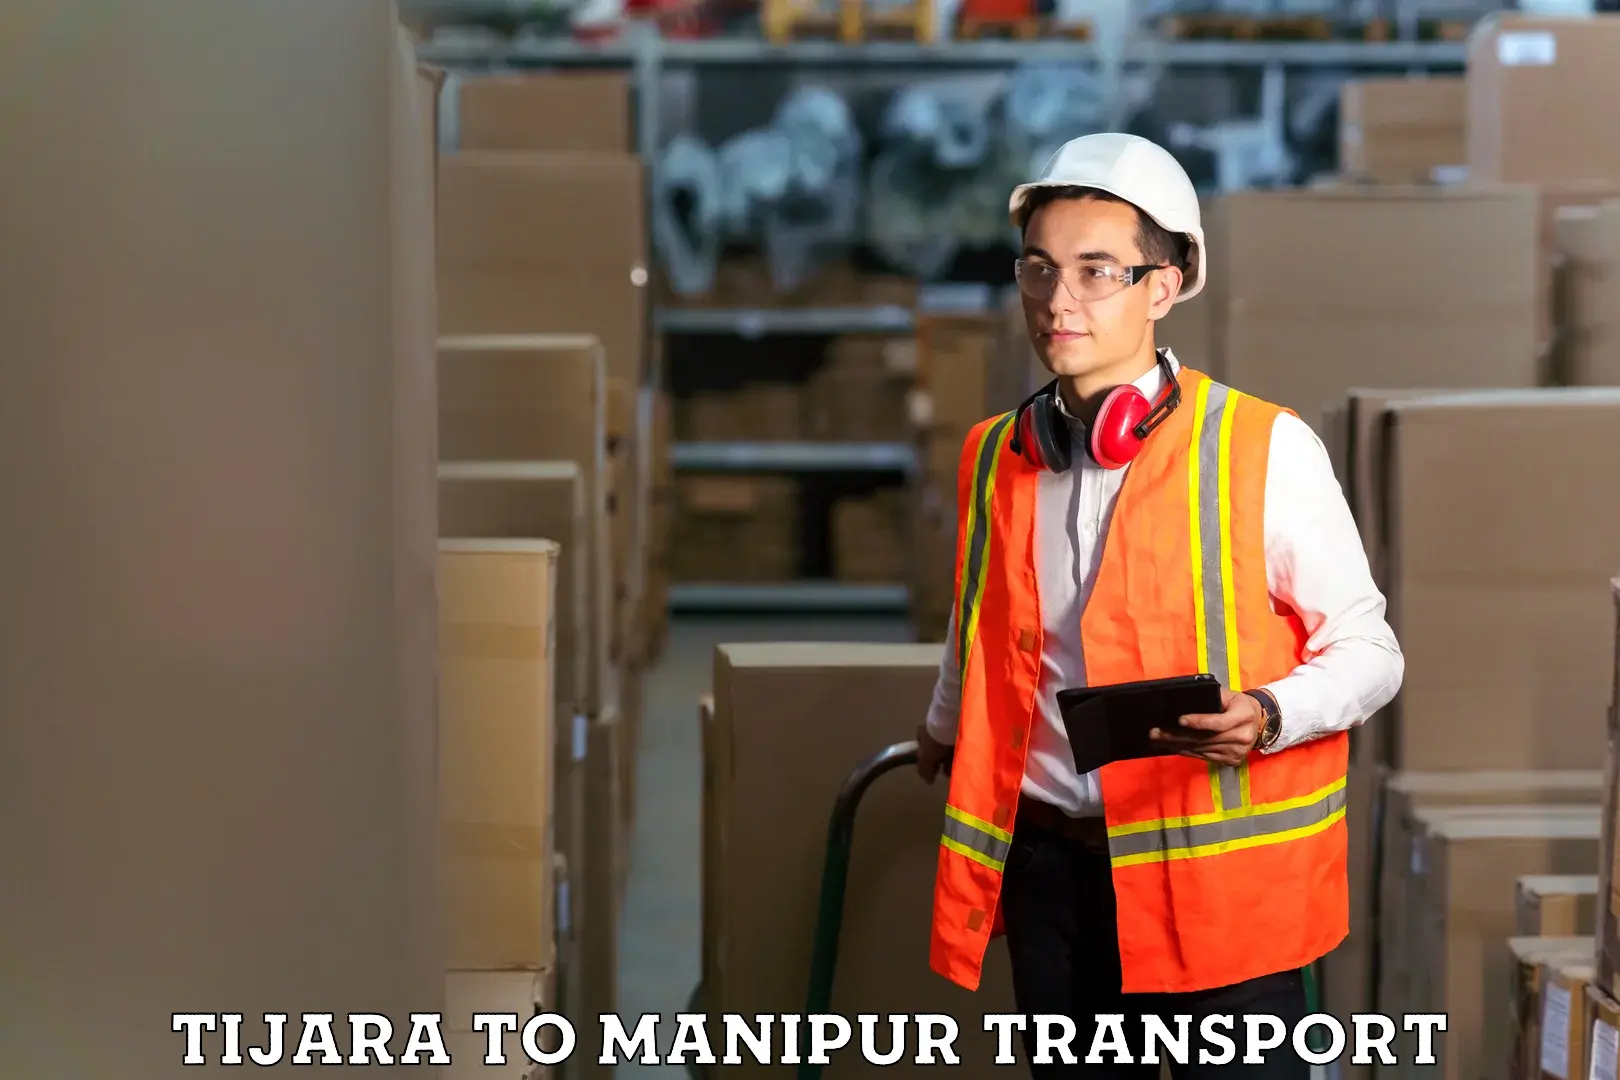 Express transport services Tijara to Manipur